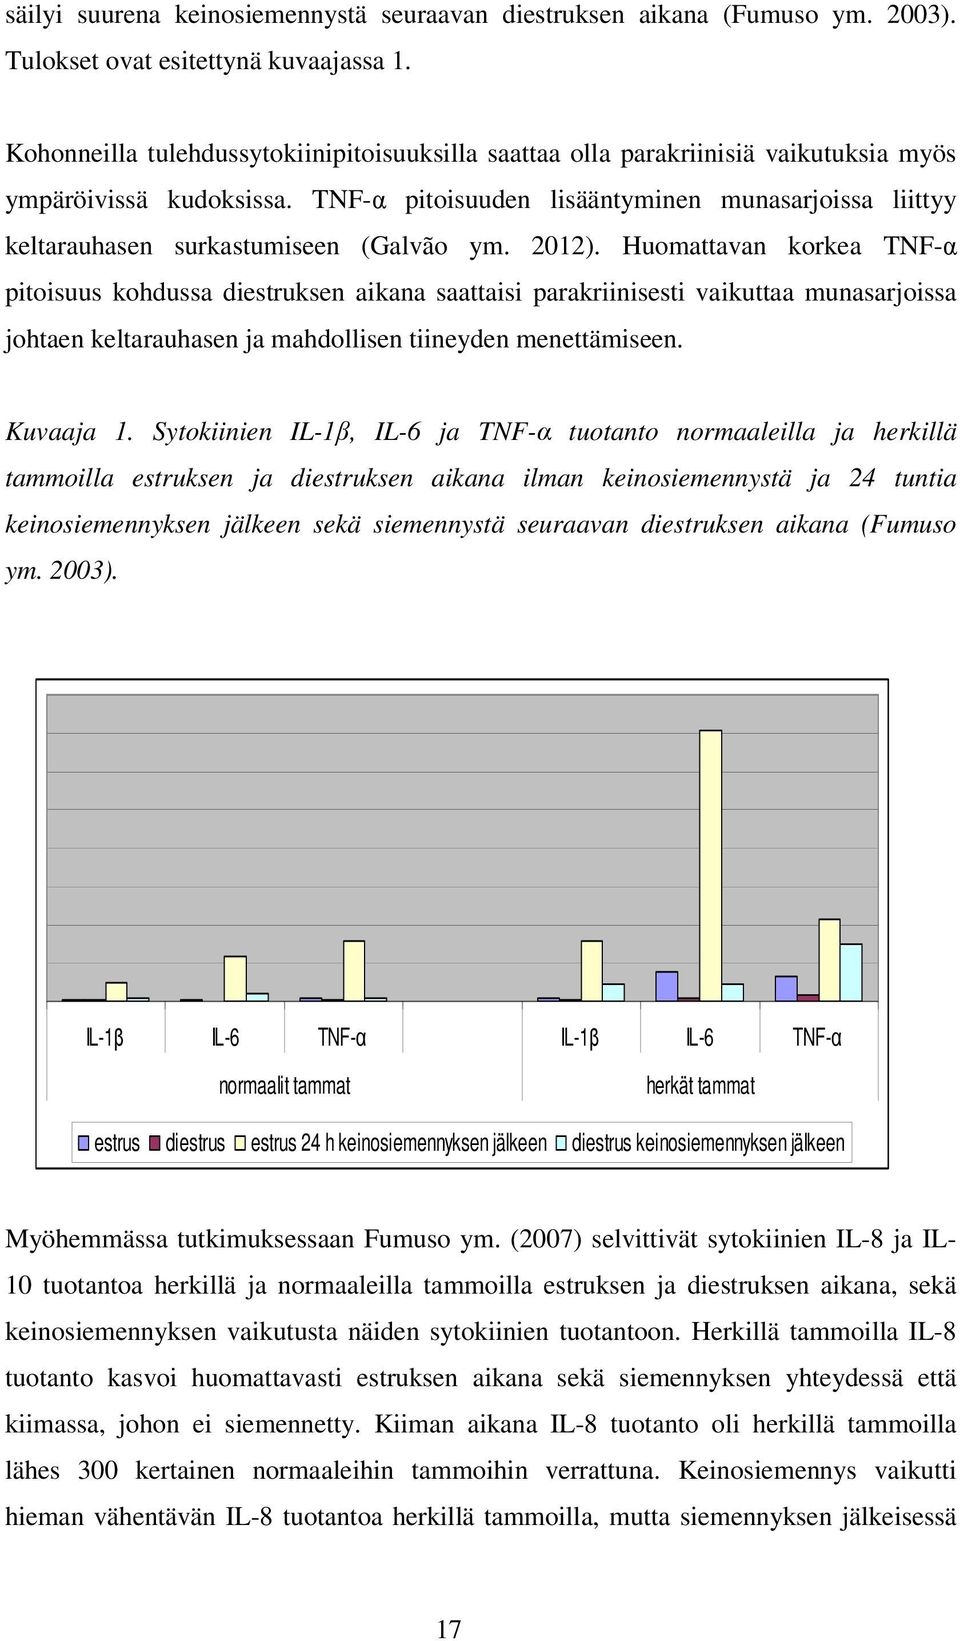 TNF-α pitoisuuden lisääntyminen munasarjoissa liittyy keltarauhasen surkastumiseen (Galvão ym. 2012).